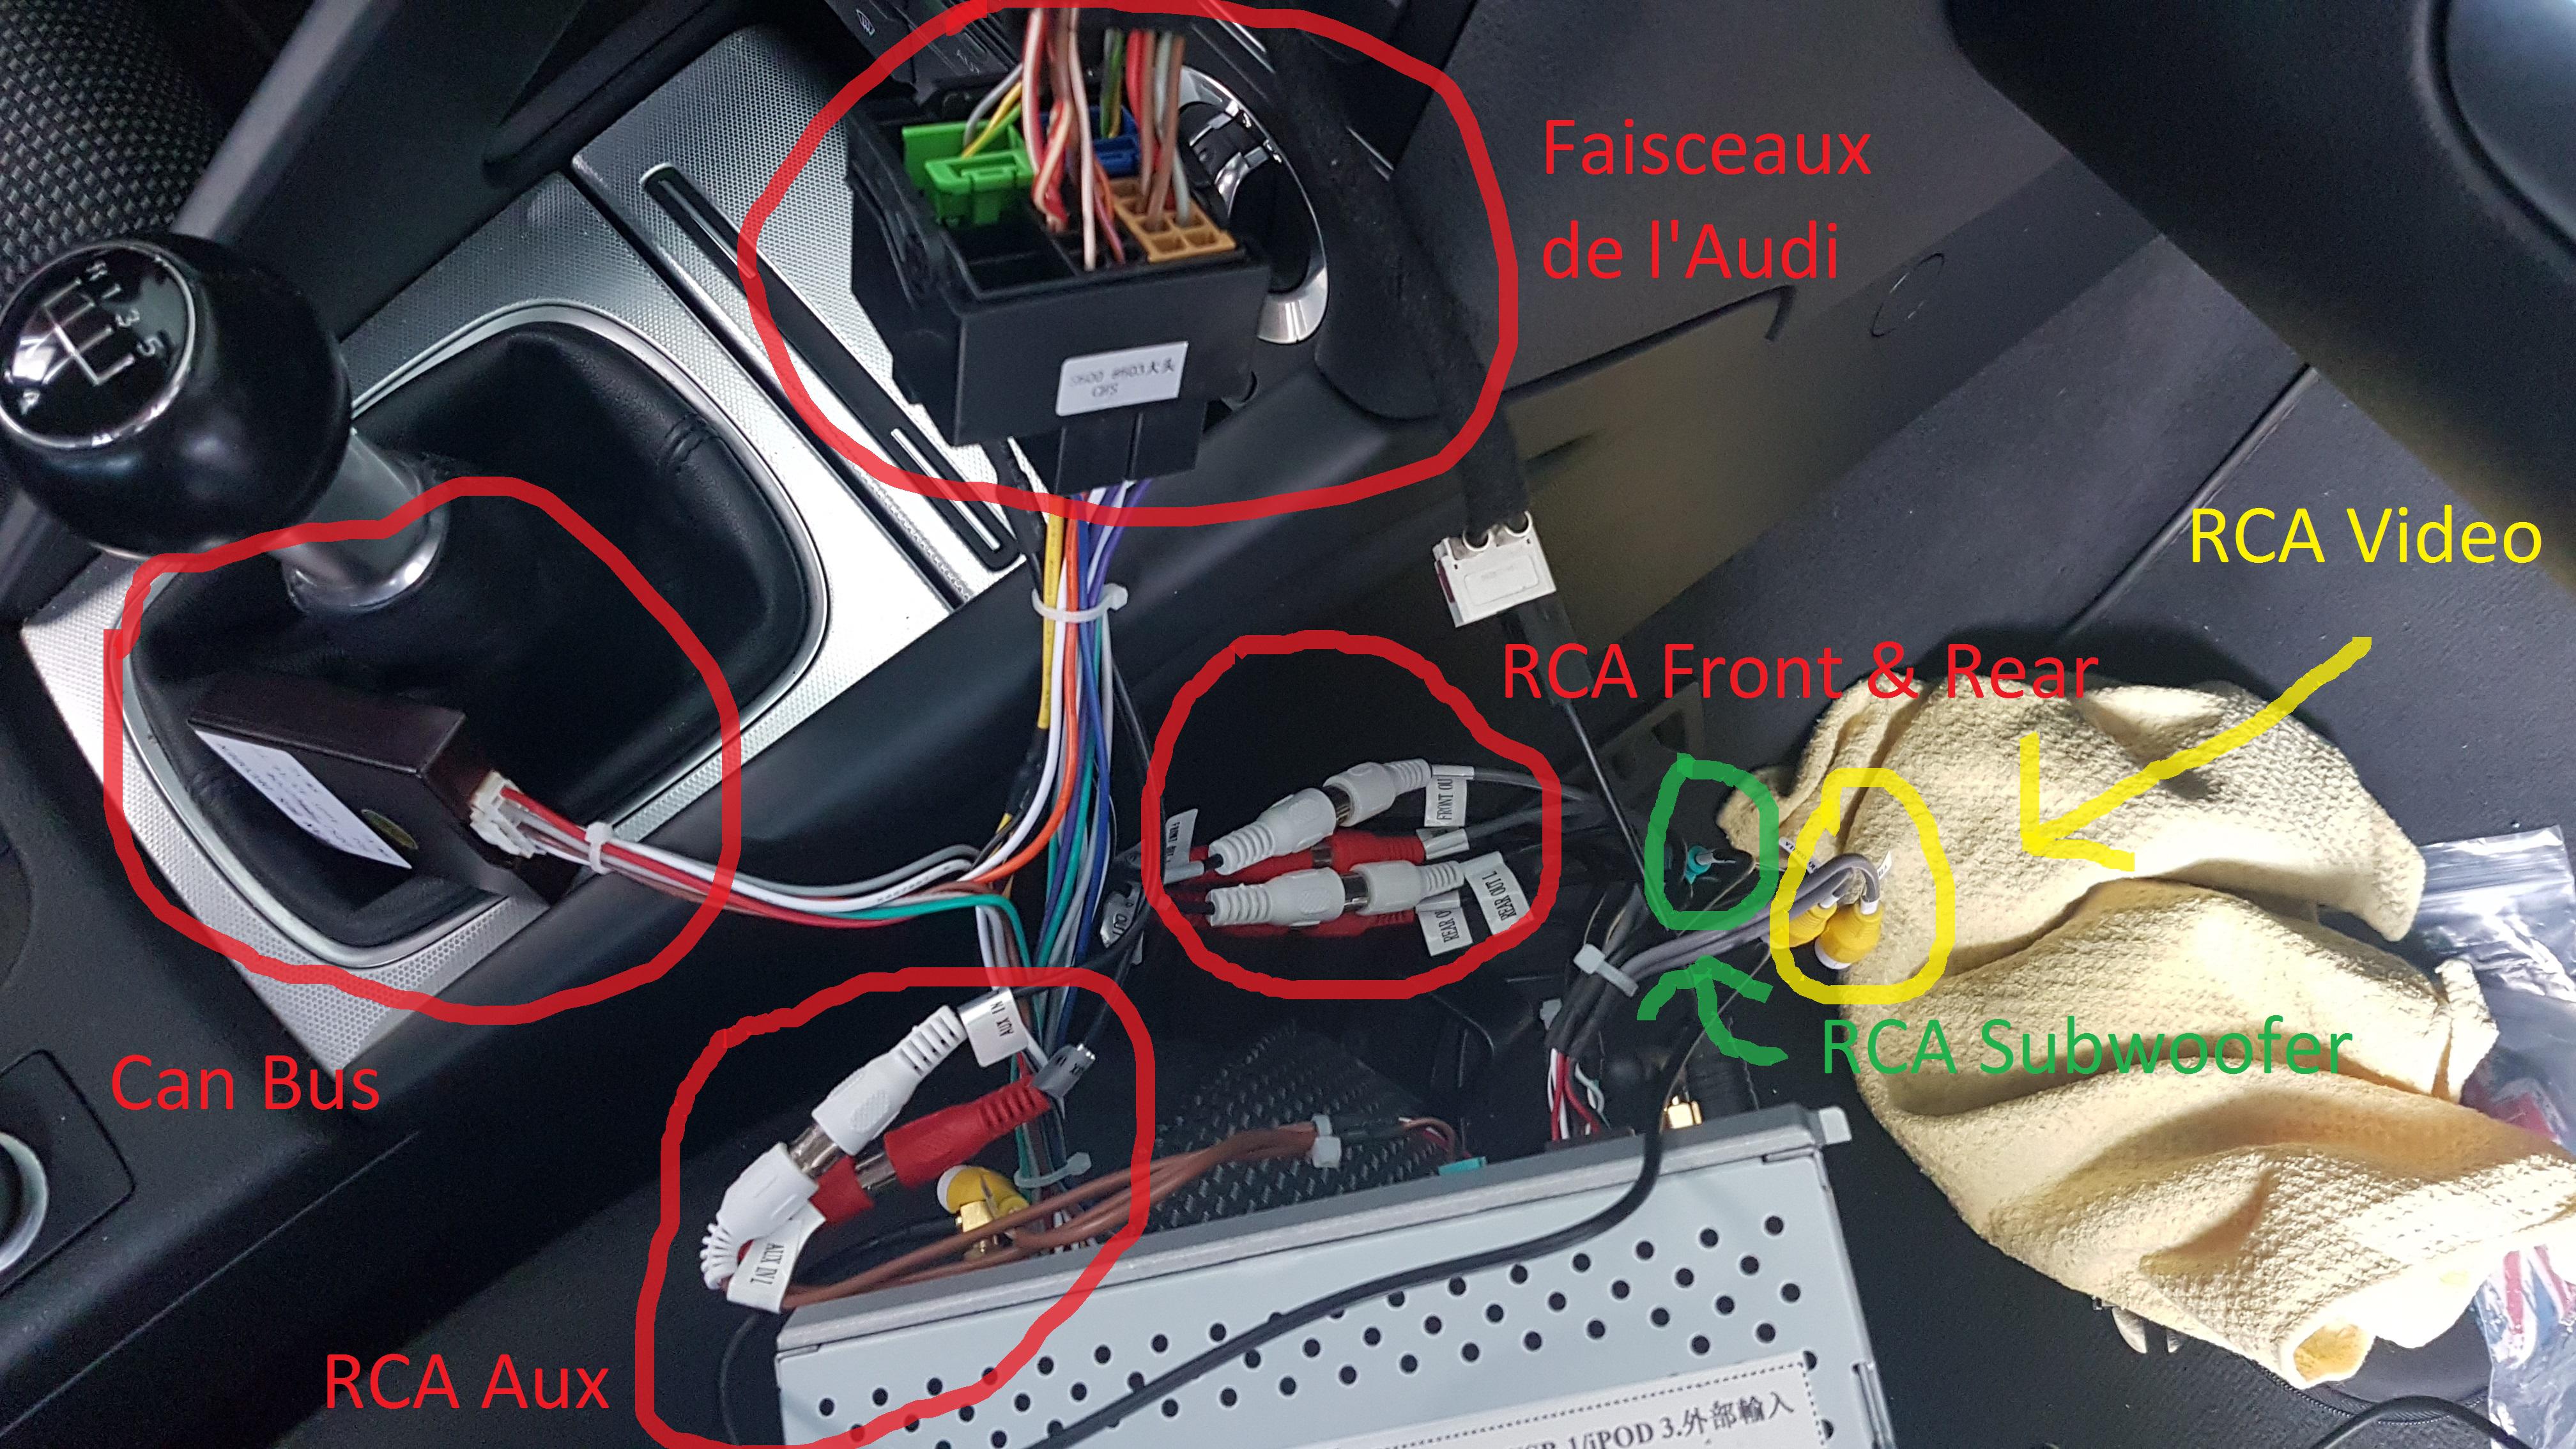 Câble d'alimentation électrique PHONOCAR avec connecteur ISO pour